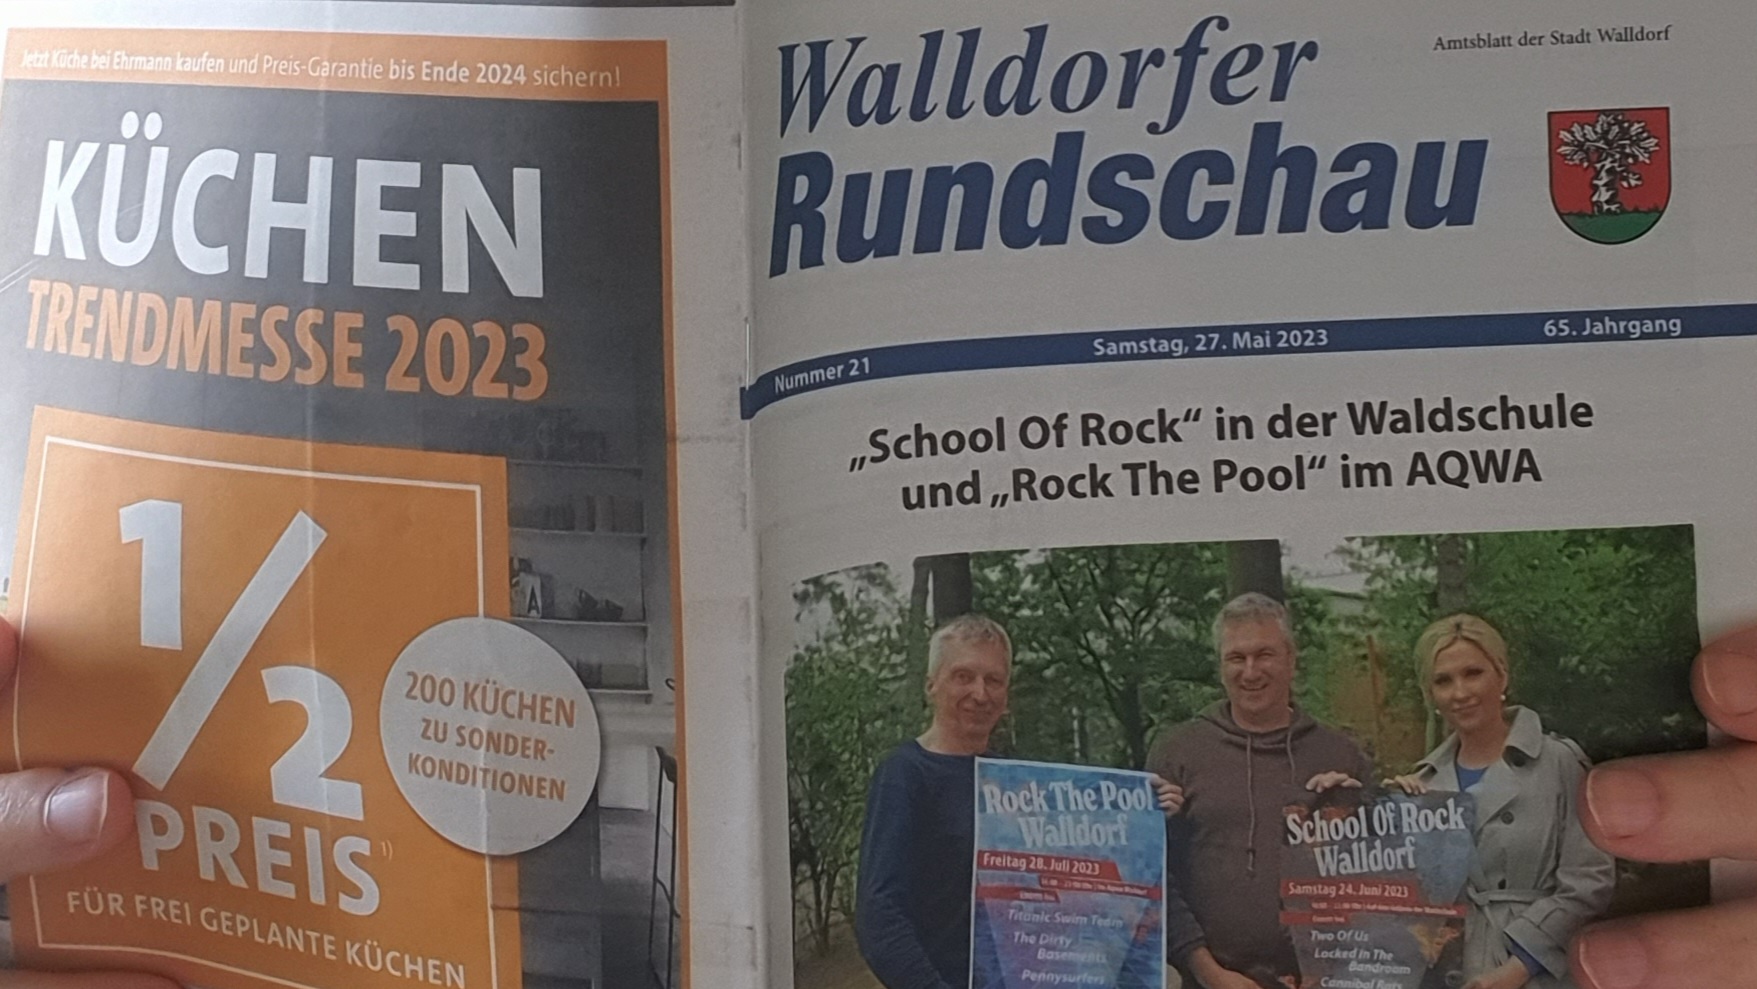 Die Walldorfer Rundschau 21 / 2023 | Foto: Dr. Clemens Kriesel